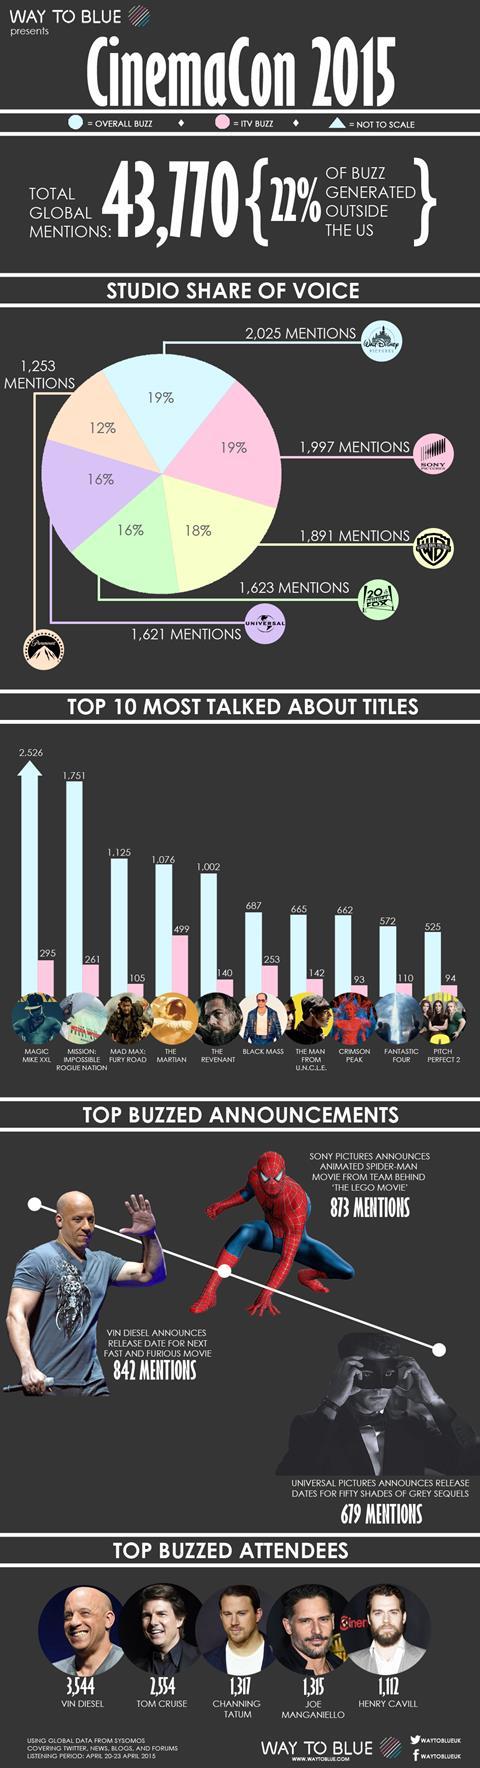 CinemaCon 2015 infographic